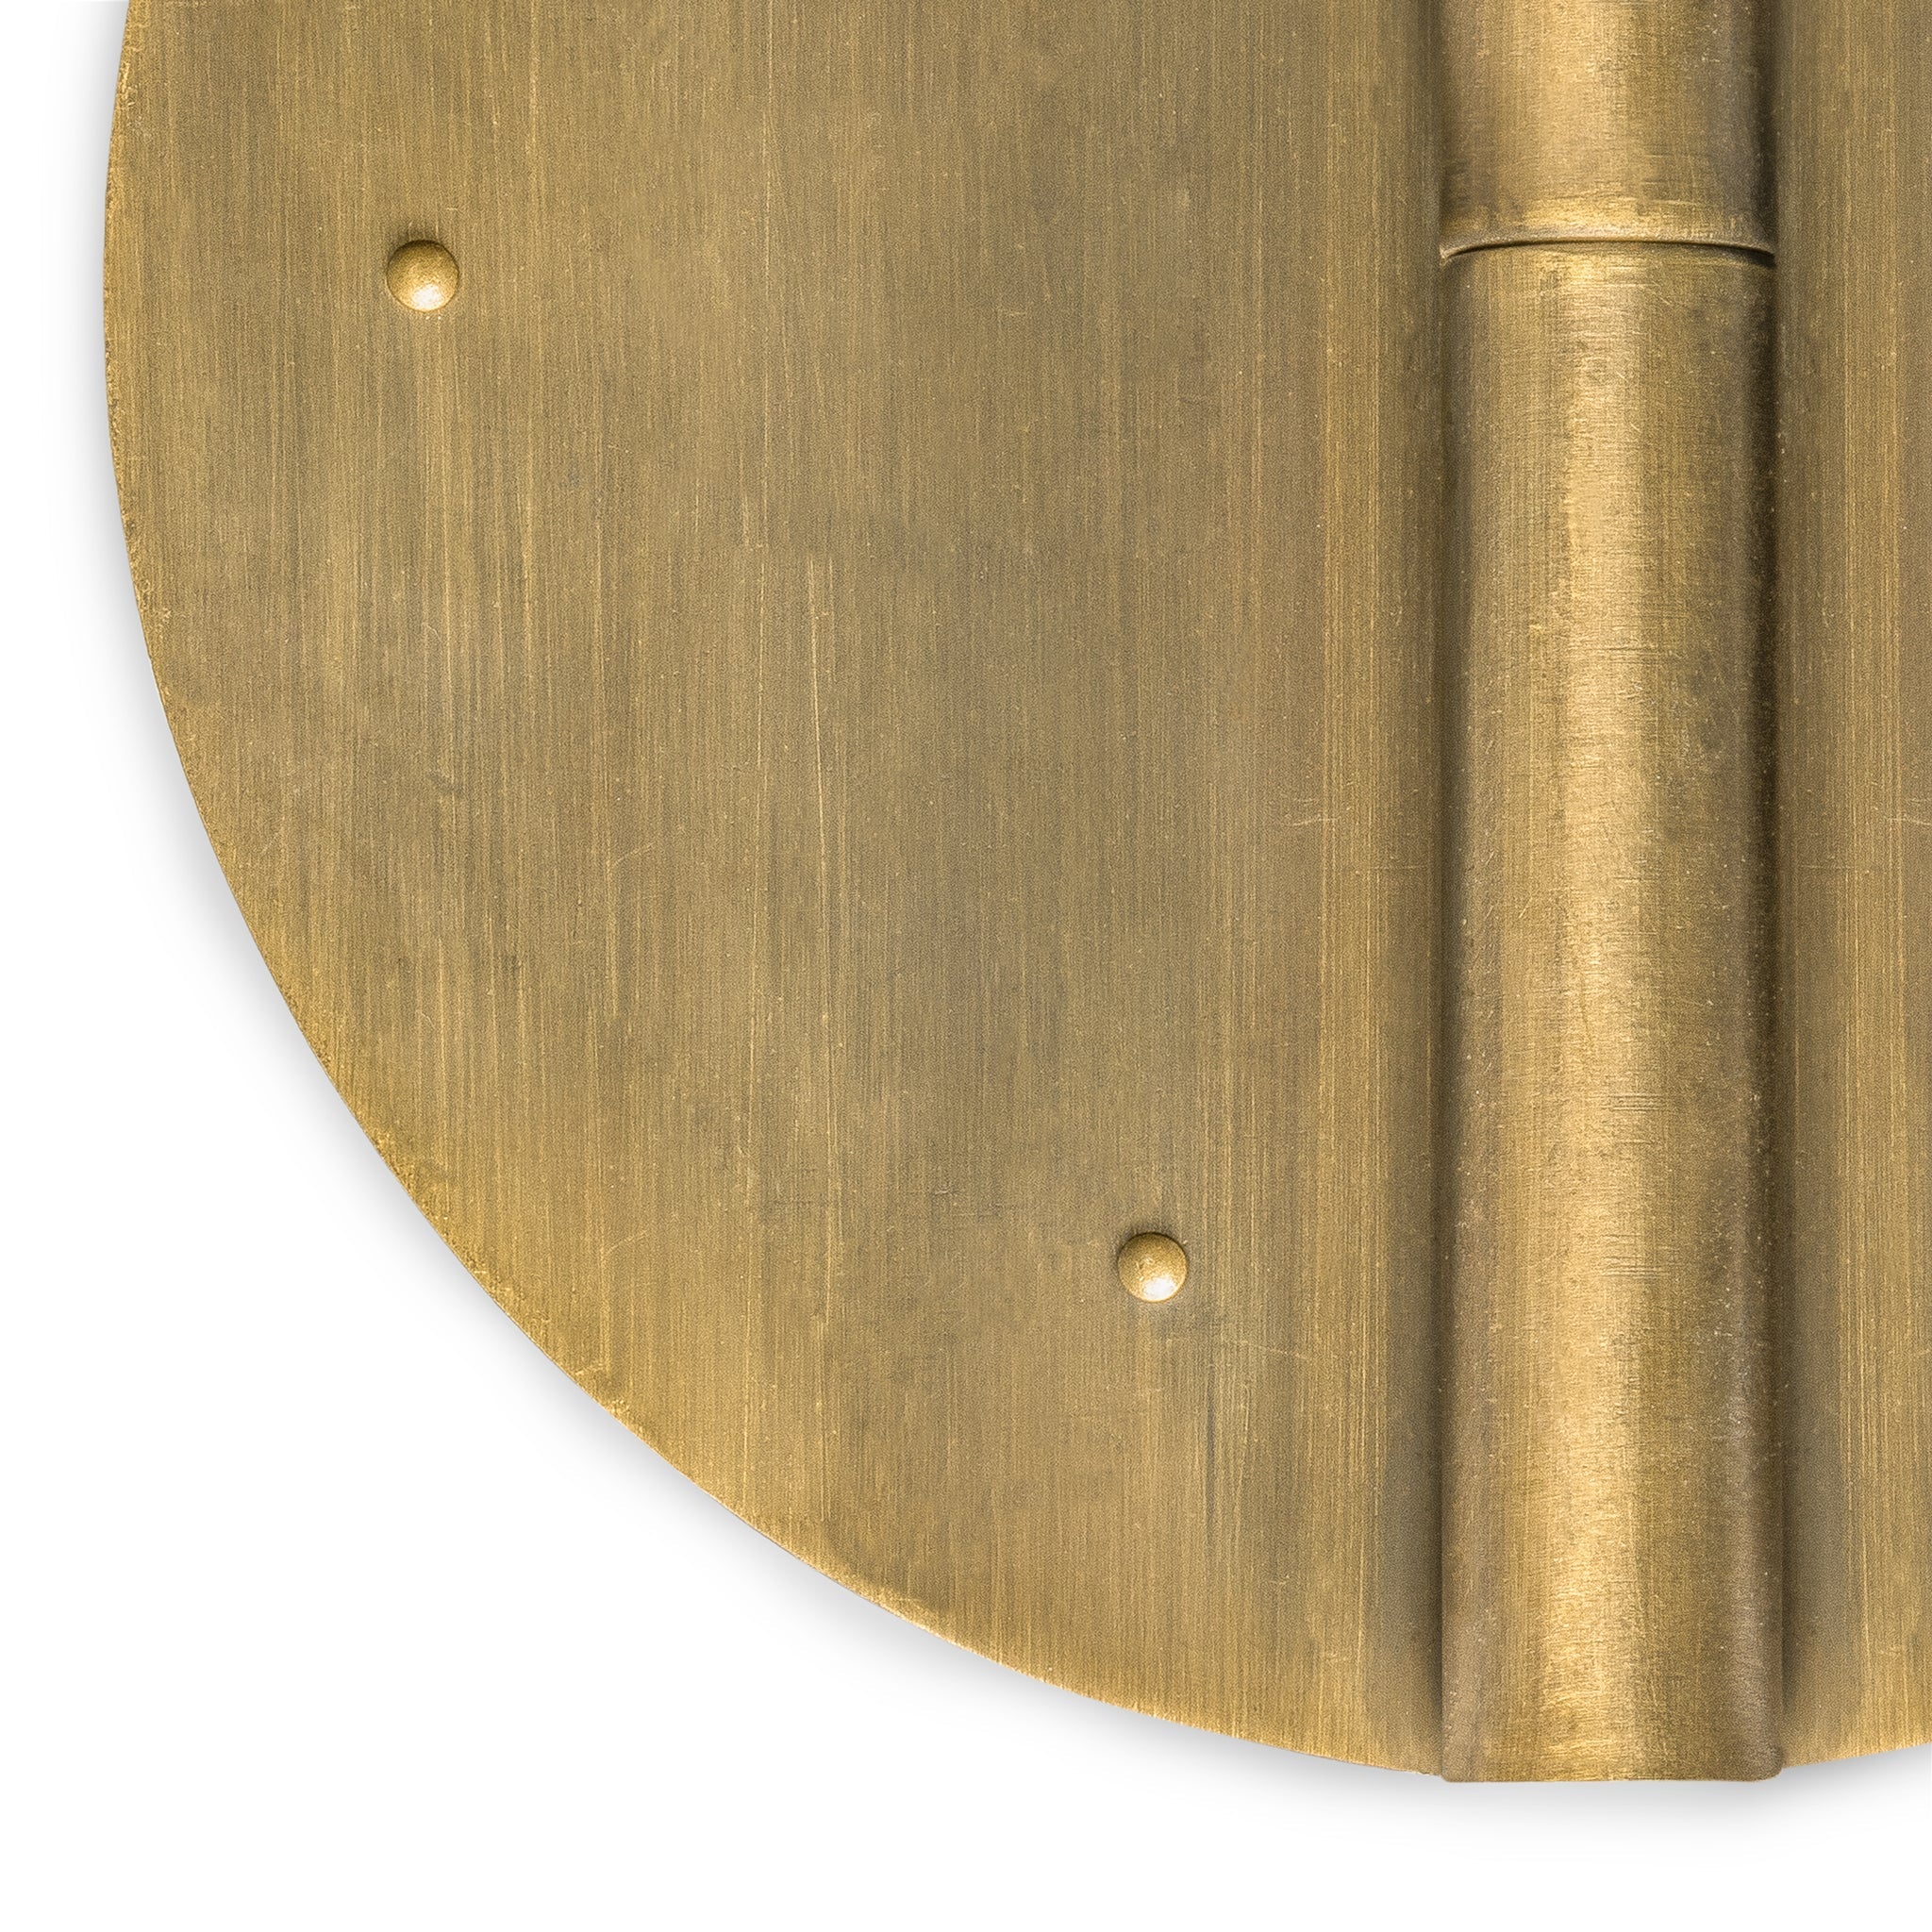 Round Hinge 5.1" - Set of 2-Chinese Brass Hardware